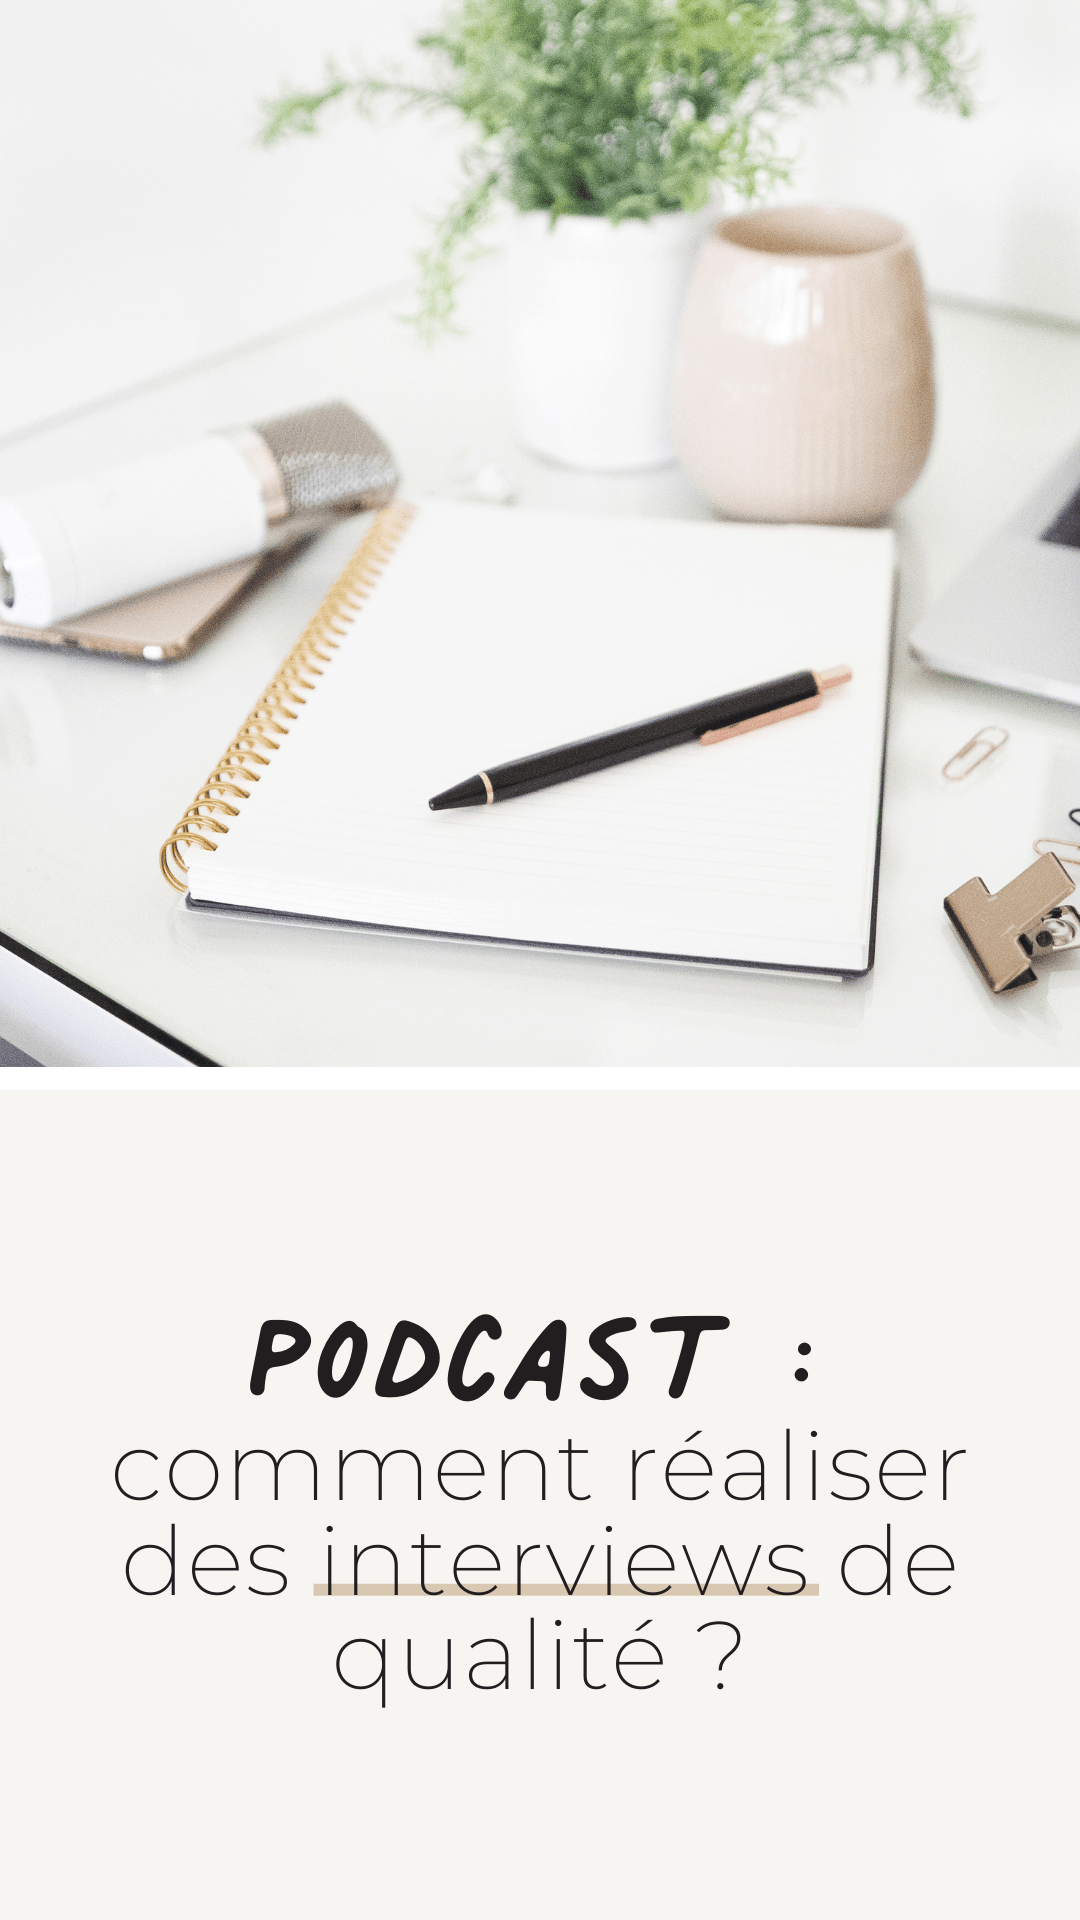 Podcast : comment réaliser des interviews de qualité ?